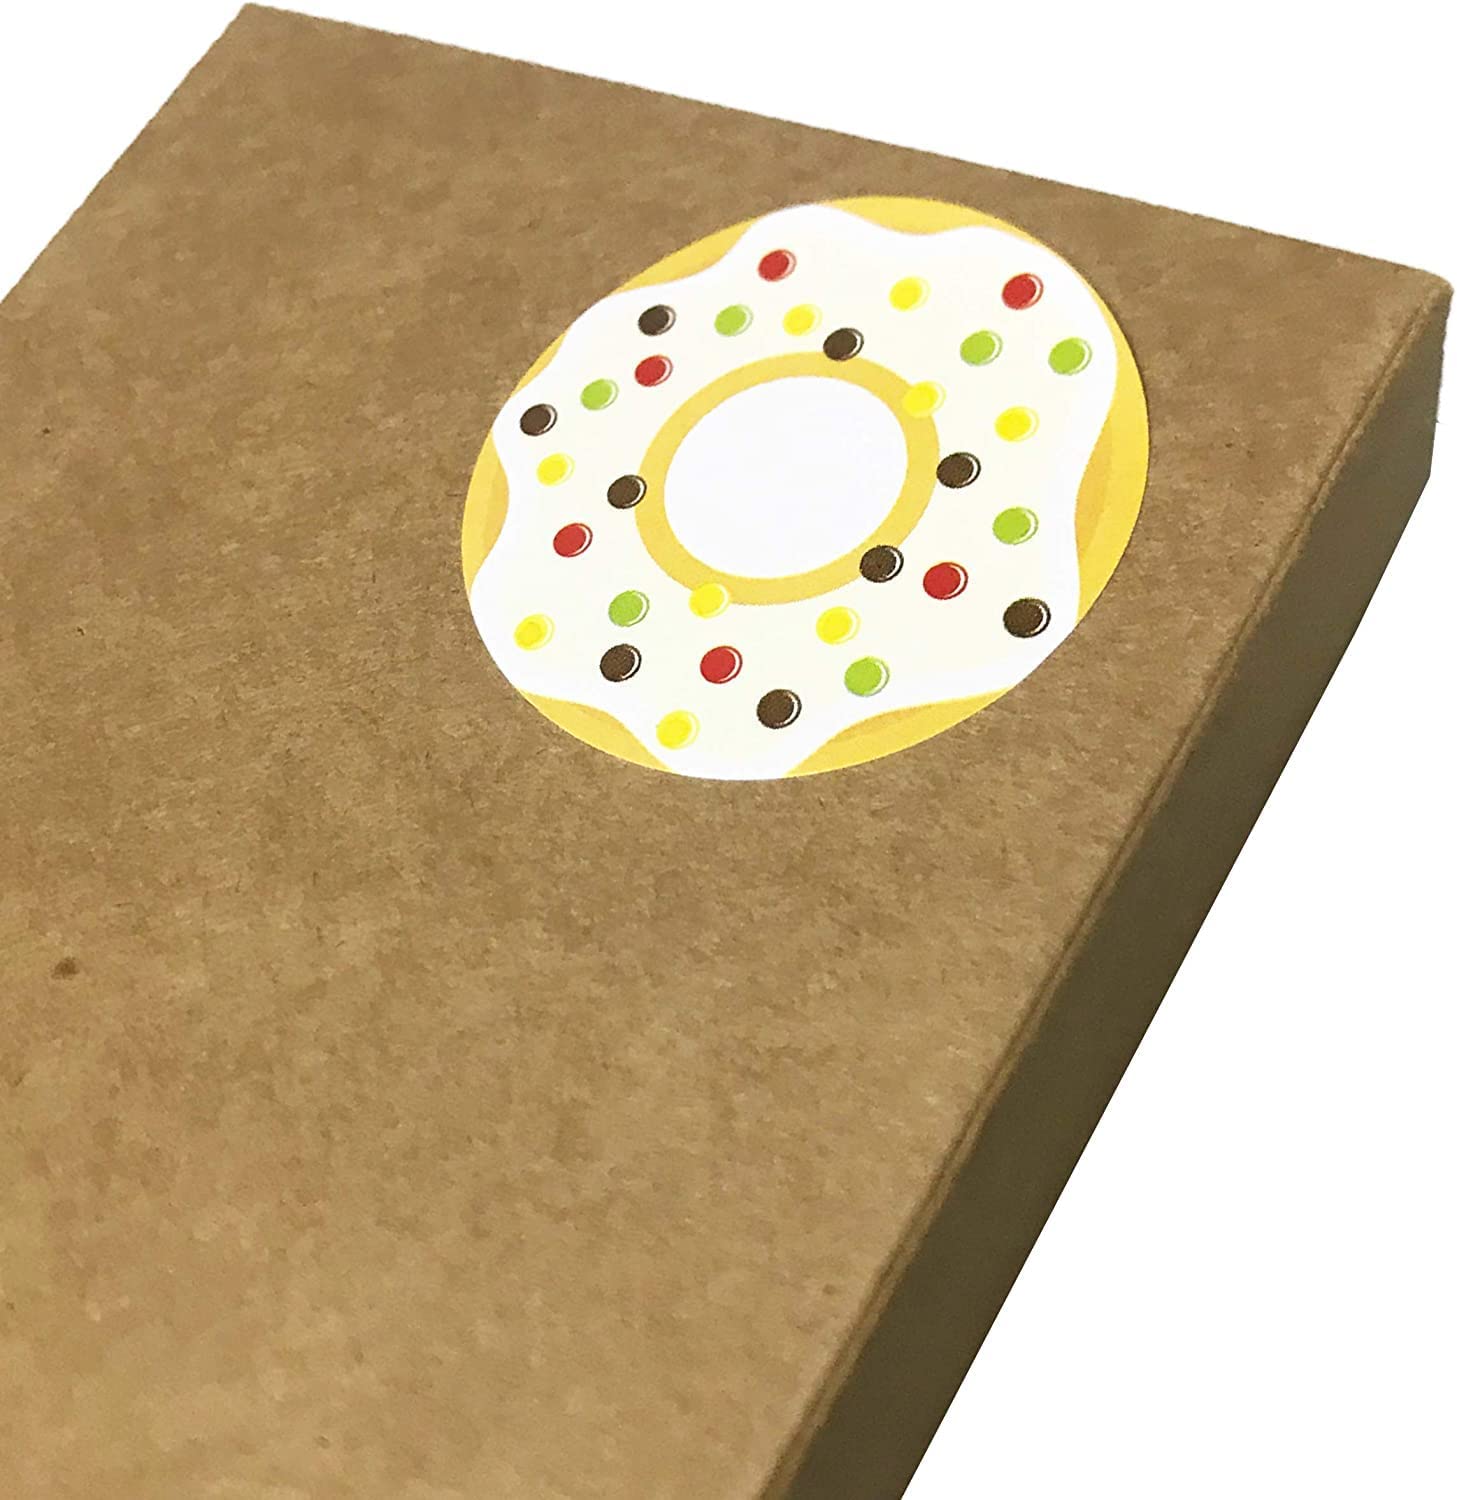 Round donut-shaped adhesive sticker